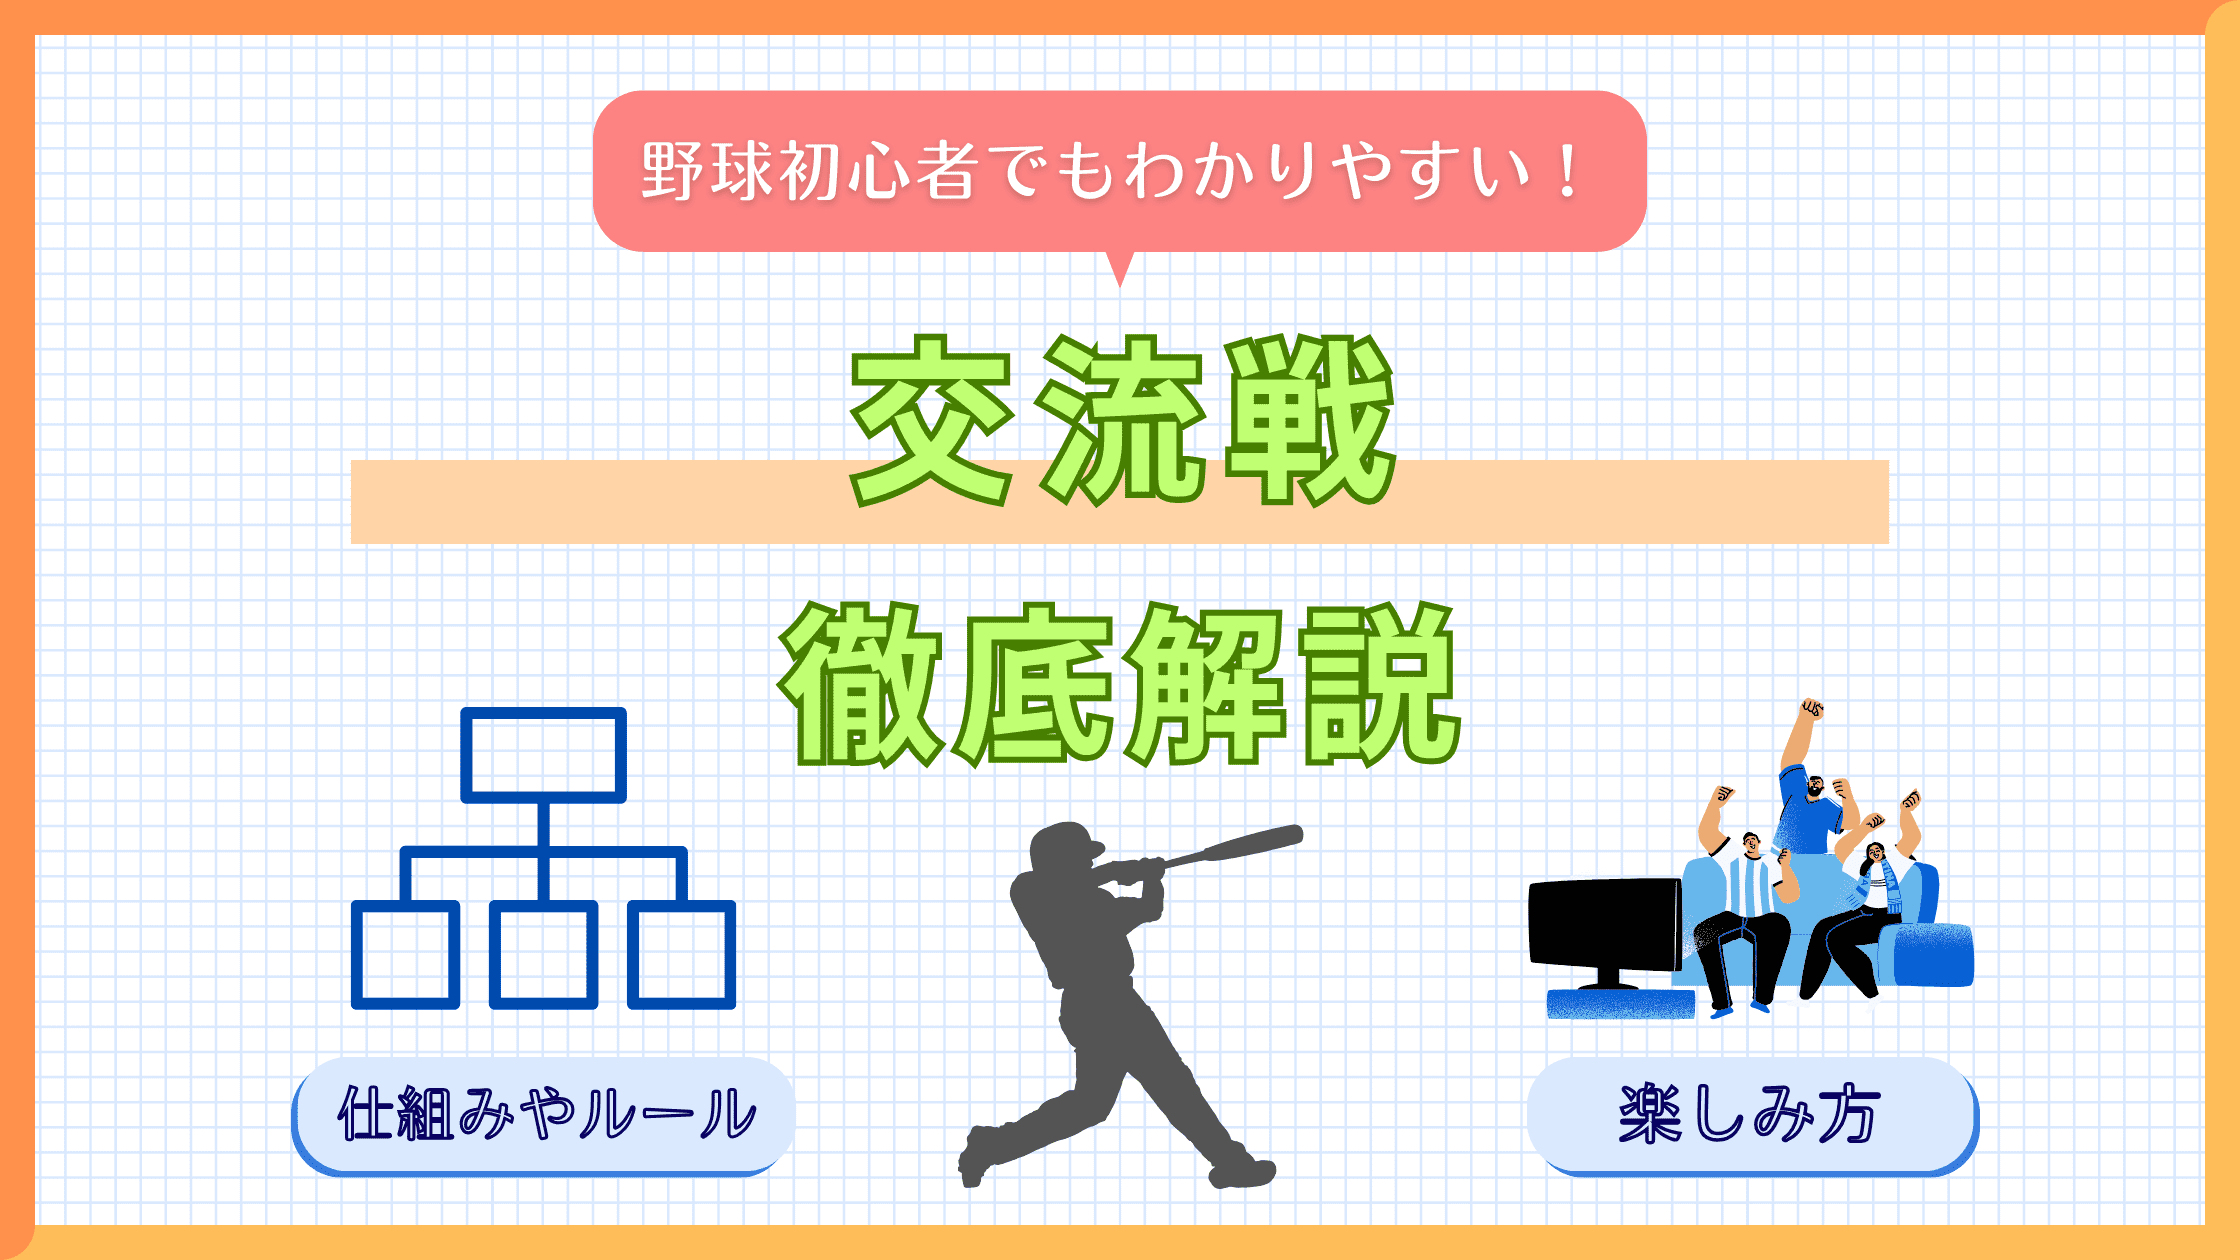 【プロ野球】交流戦とは!?ルールや仕組み、過去の成績なども解説!!